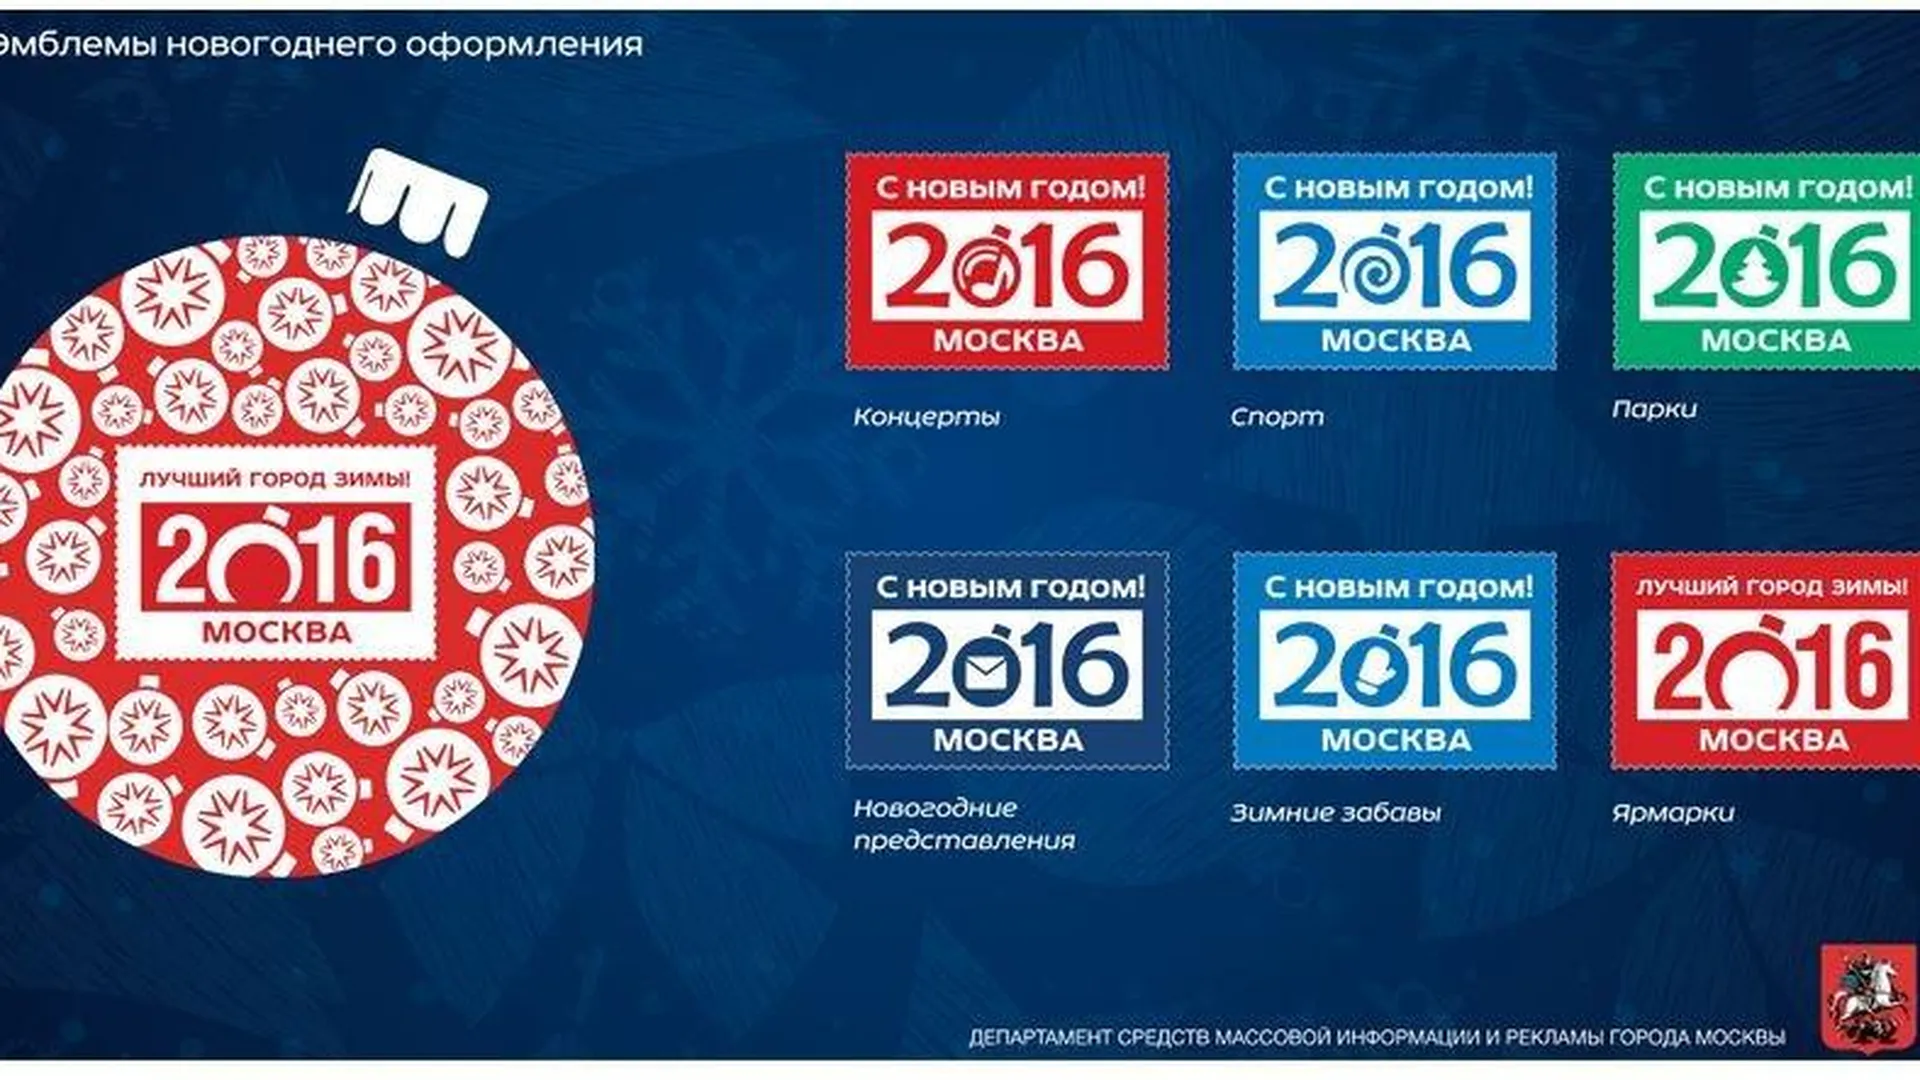 Почтовая марка стала главным логотипом новогодней Москвы